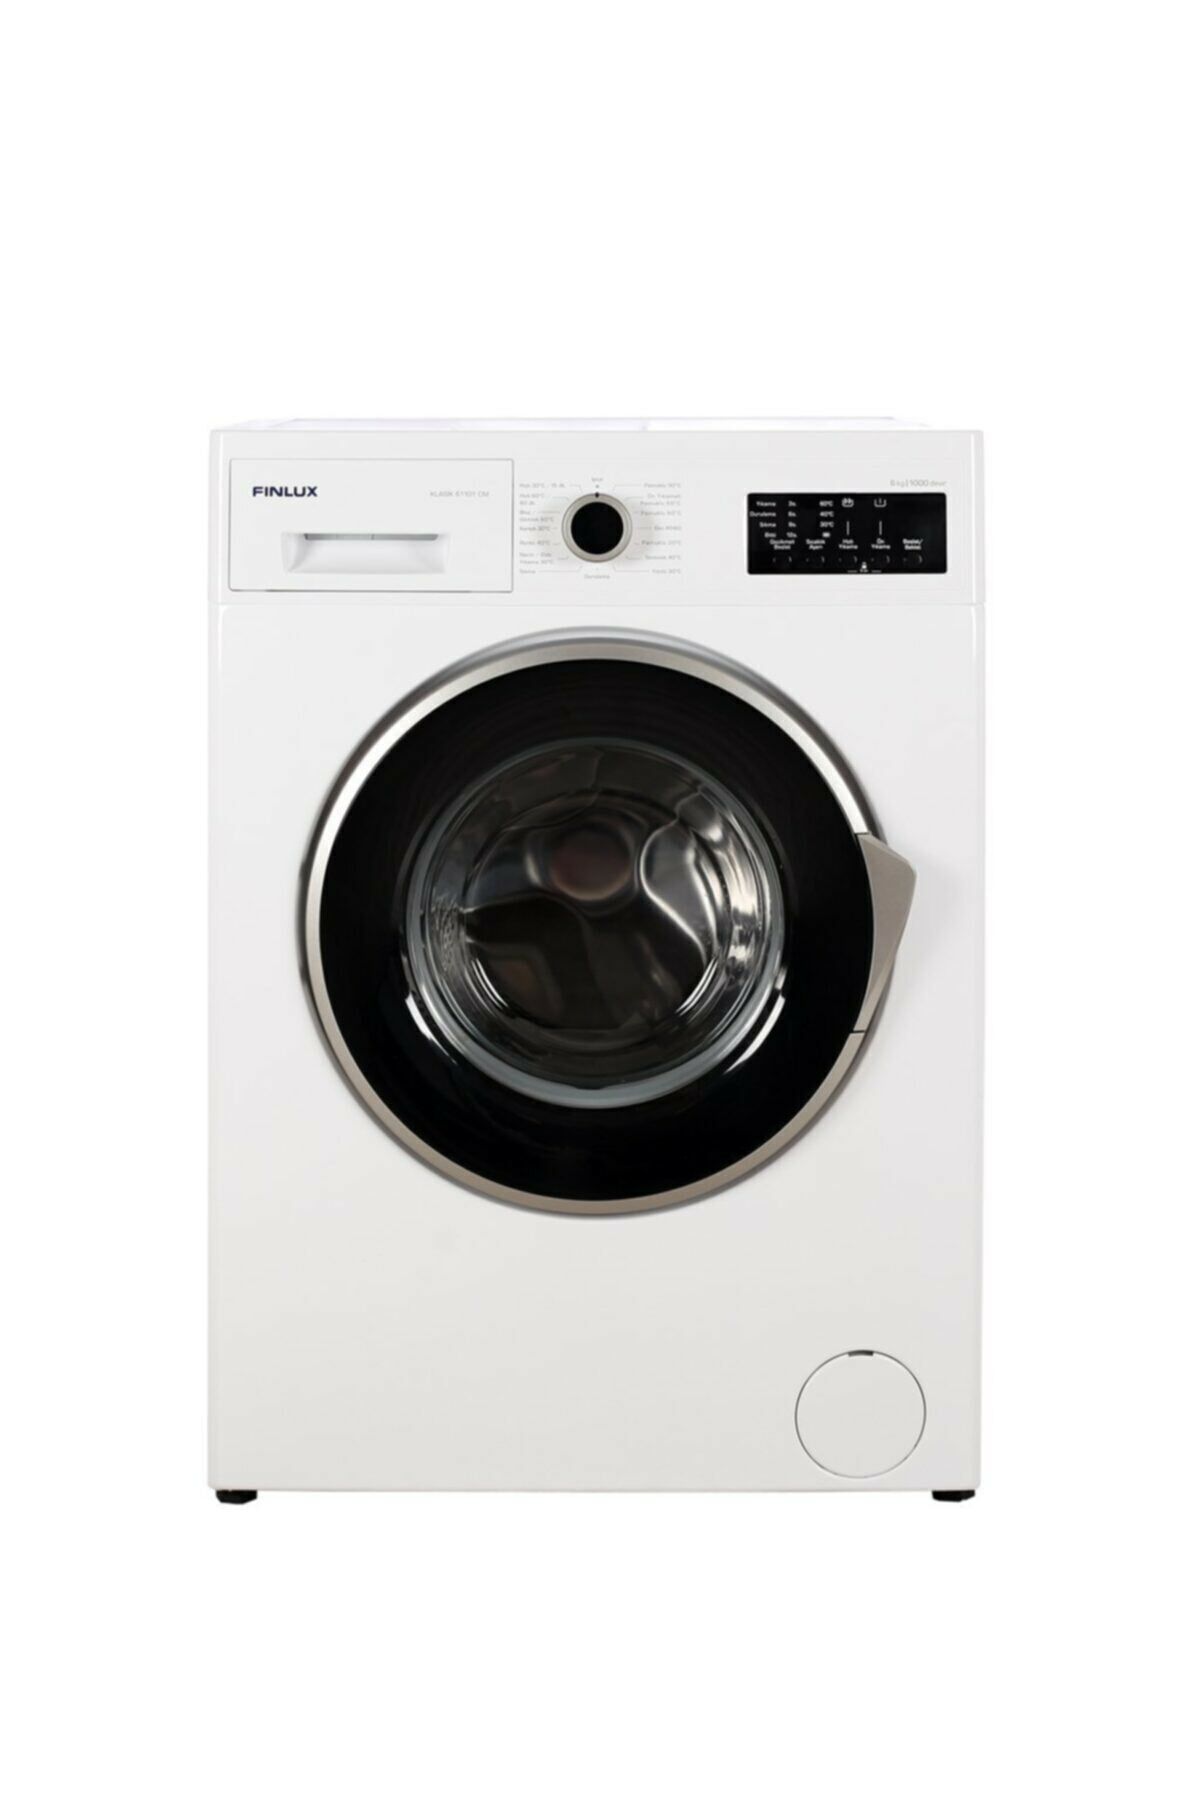 Finlux Klasik 61101 Cm E Enerji Sınıfı 6 Kg 1000 Devir Çamaşır Makinesi 61101CM